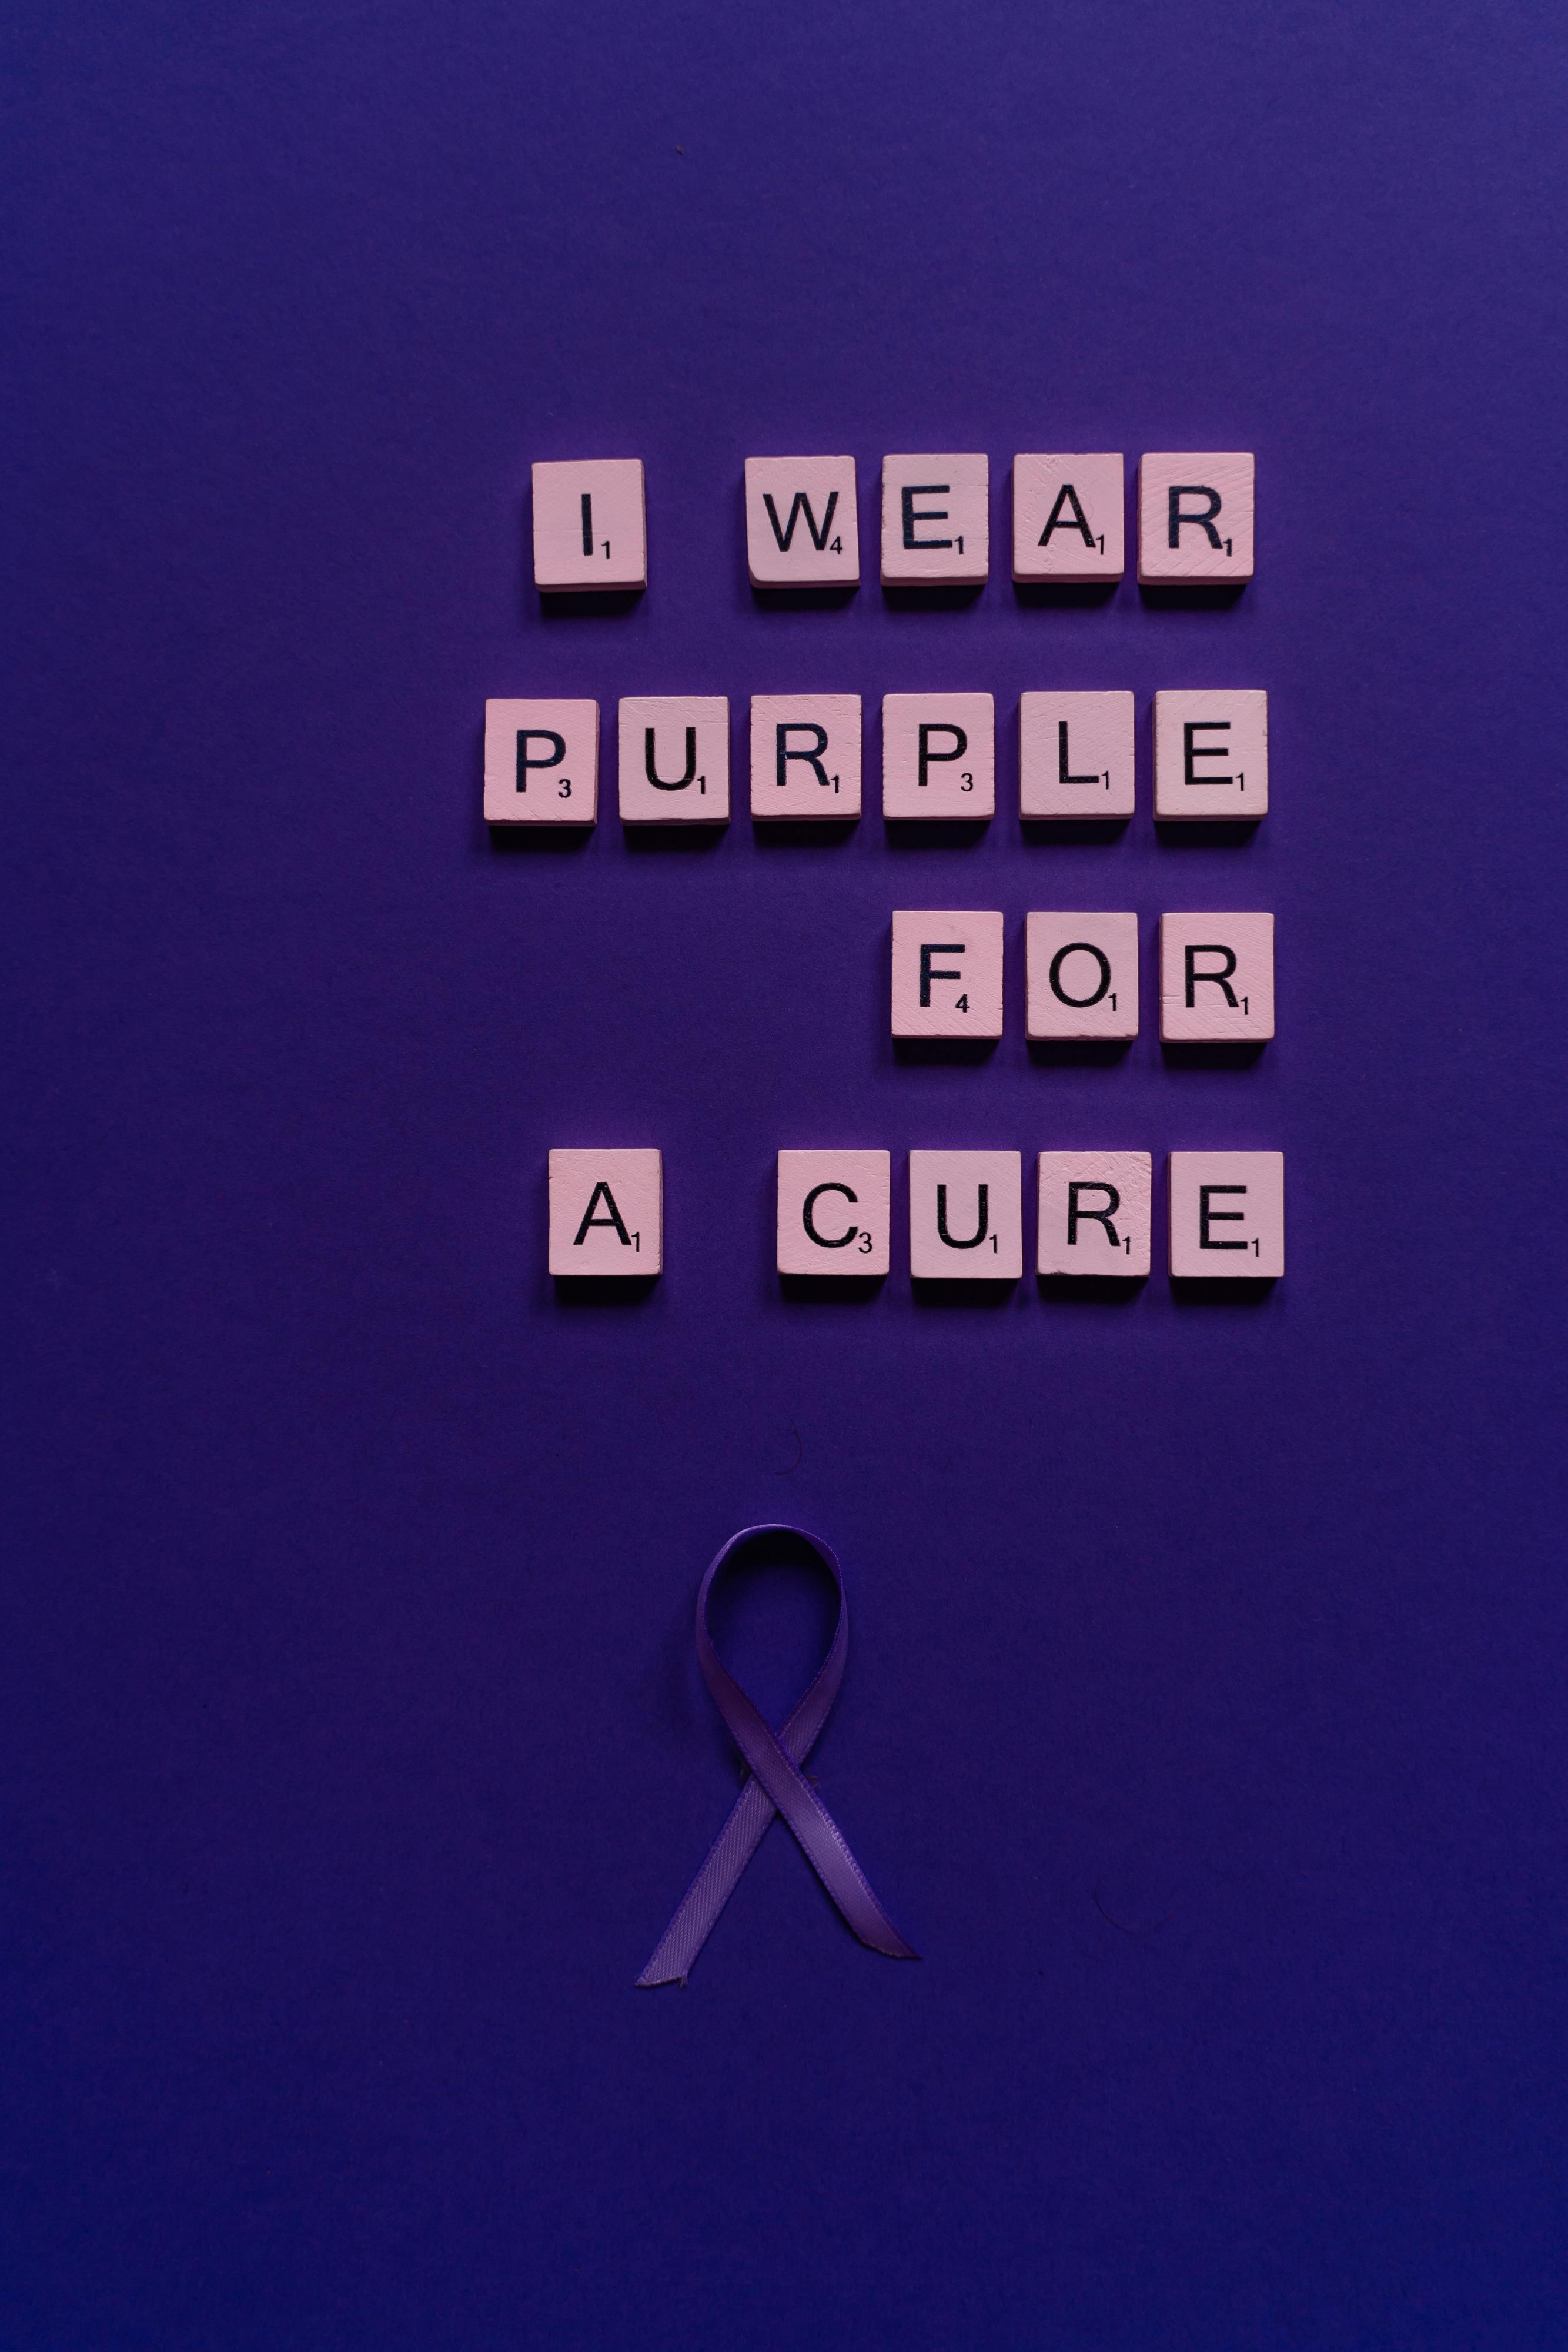 A Purple Ribbon Under the Scrabble Tiles